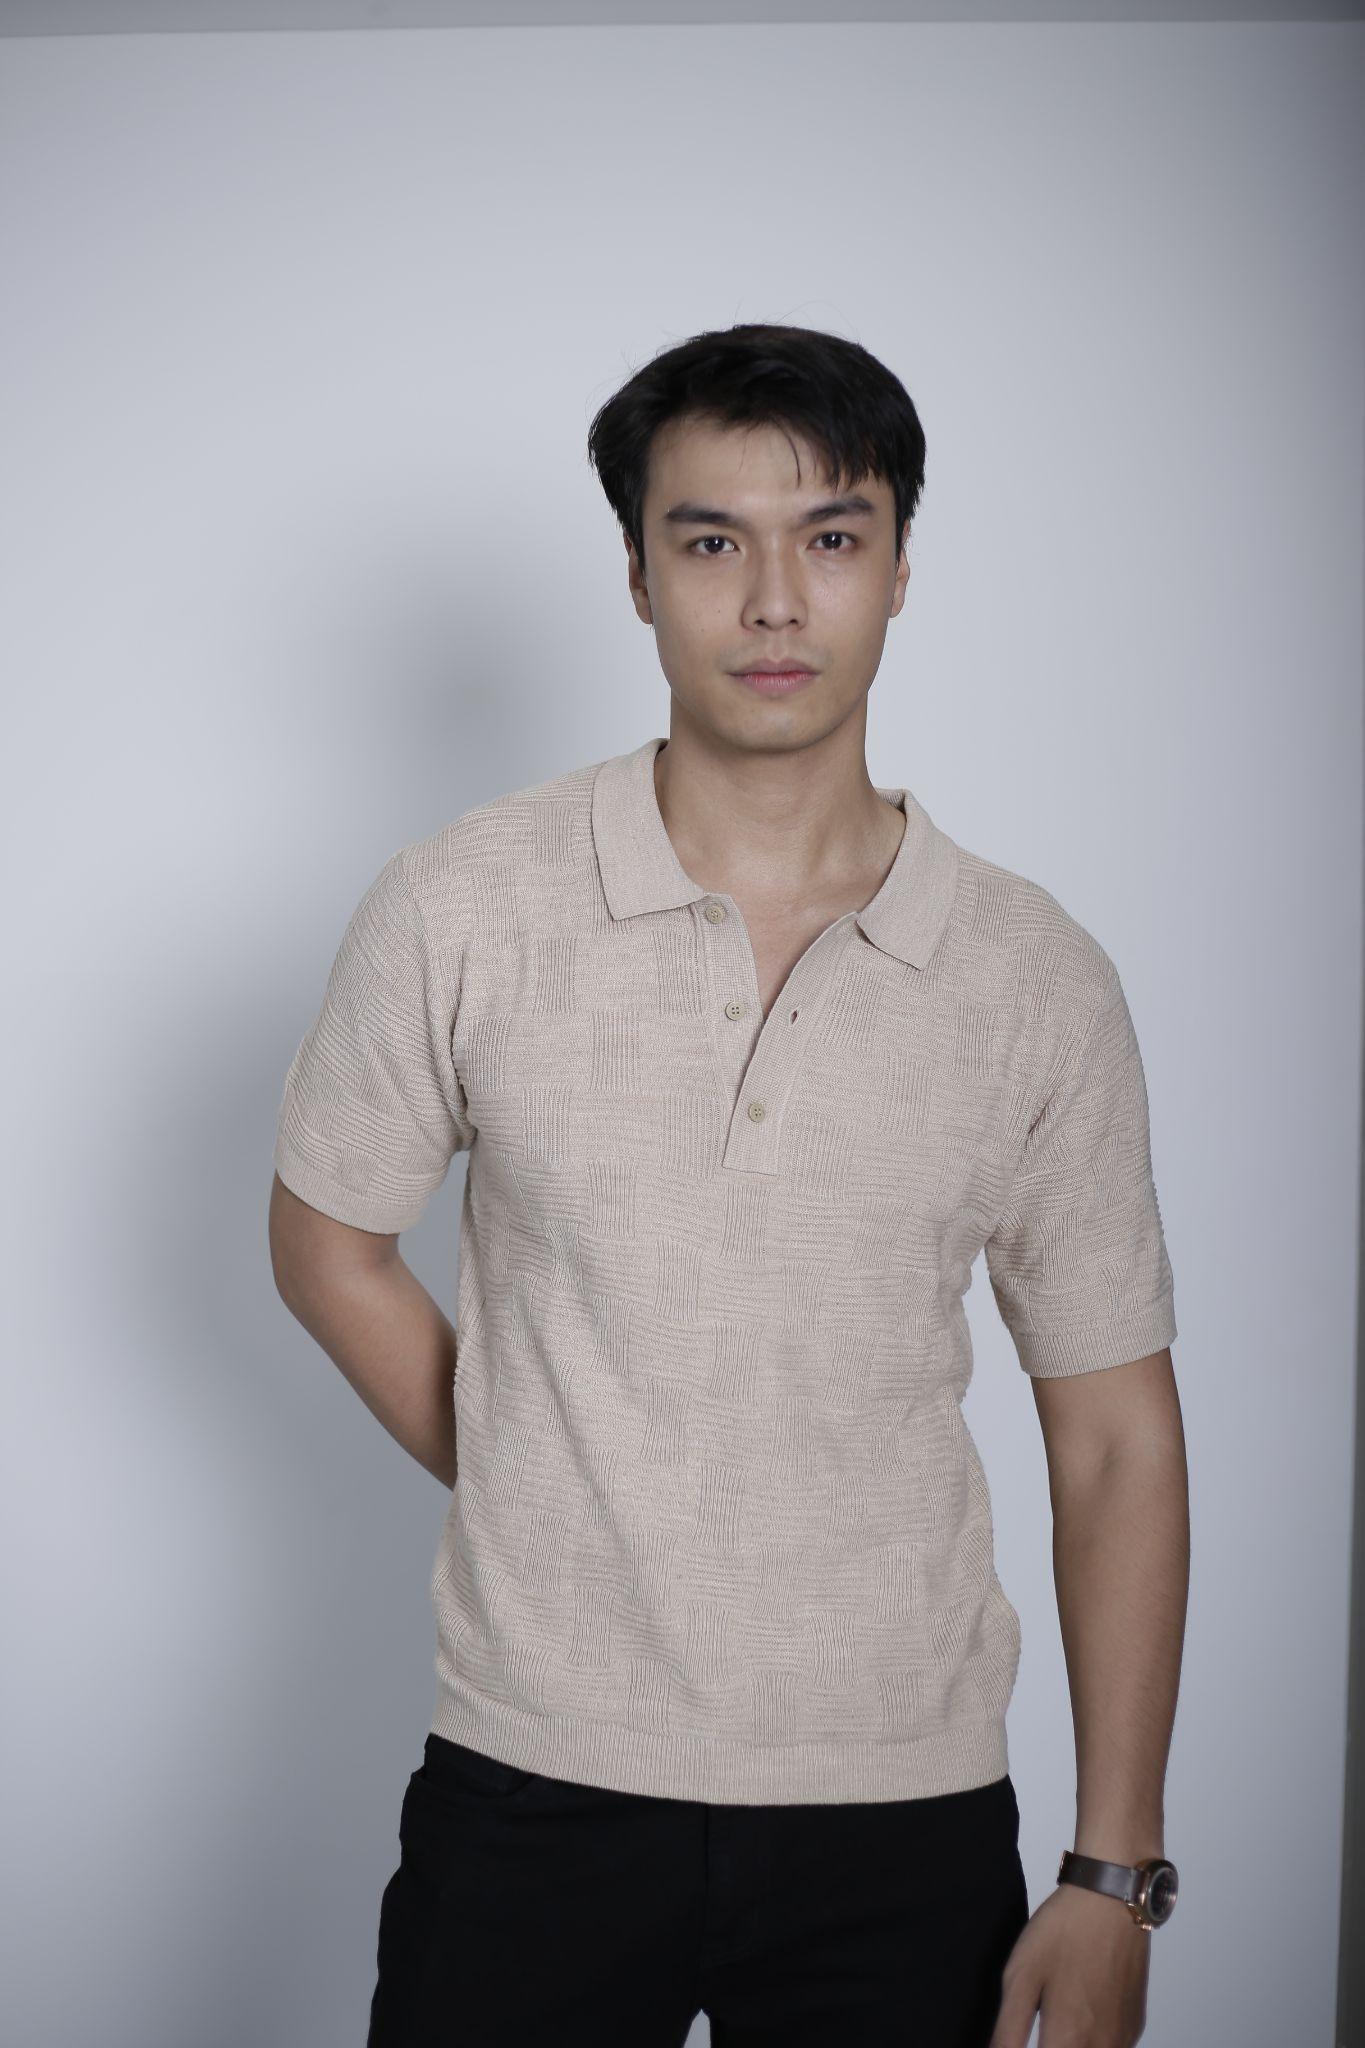 Liên hoan phim châu Á Đà Nẵng casting diễn viên - Ảnh 6.